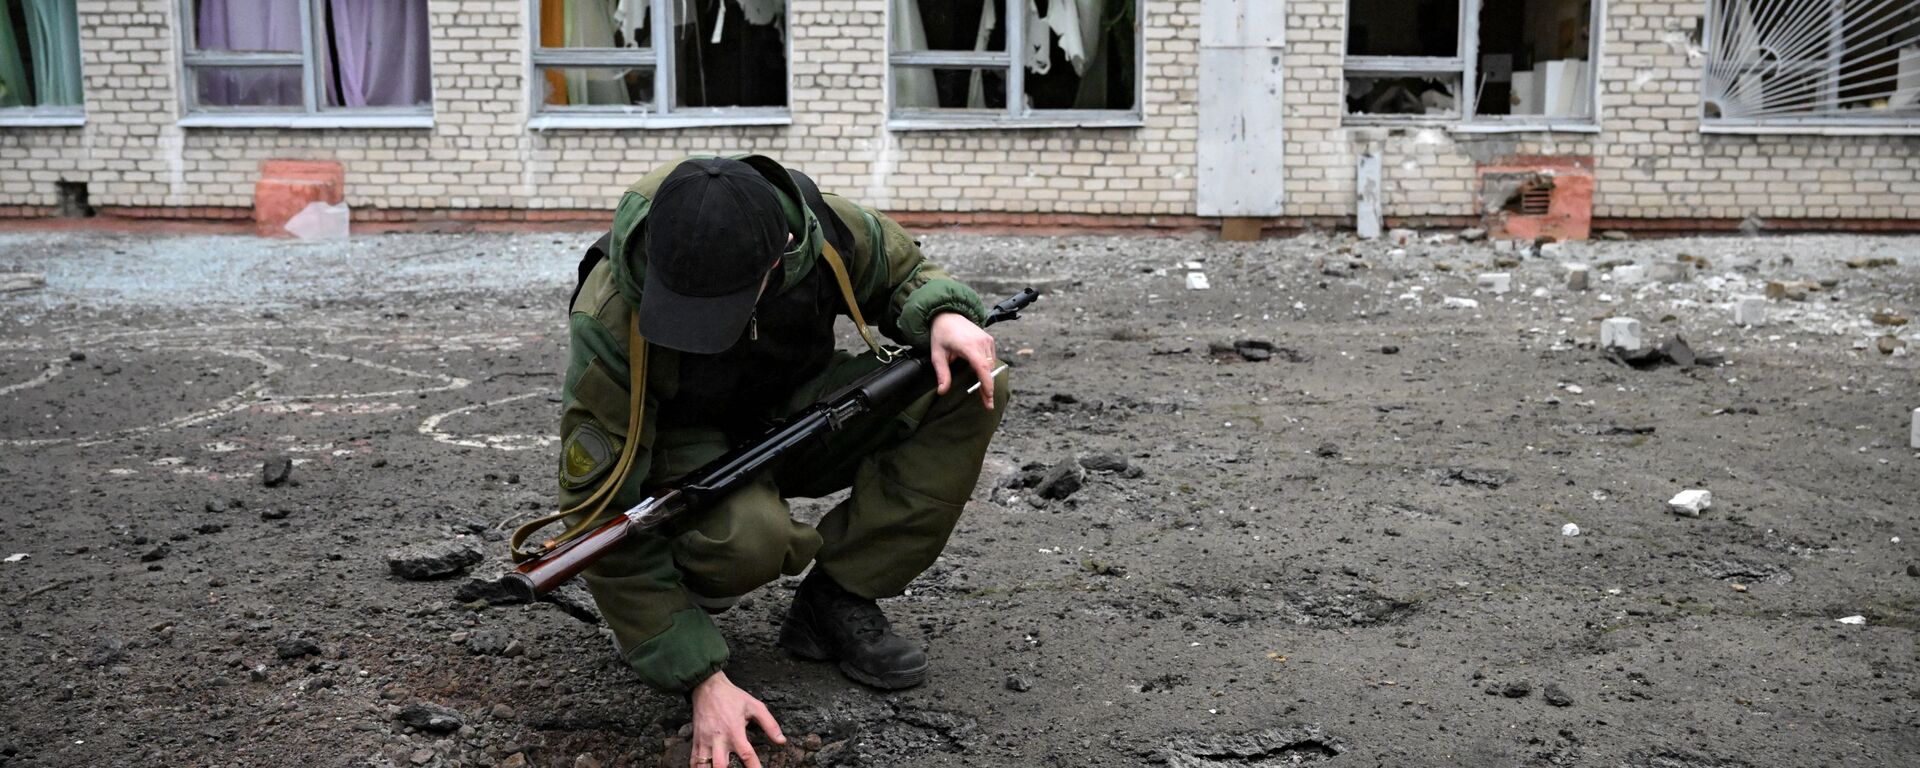 أحد عناصر الشرطة التباع لجمهورية دونيتسك الشعبية في مدرسة غورلوفكا، التي تضررت من جراء القصف الأوكراني، 25 فبراير 2022 - سبوتنيك عربي, 1920, 25.02.2022